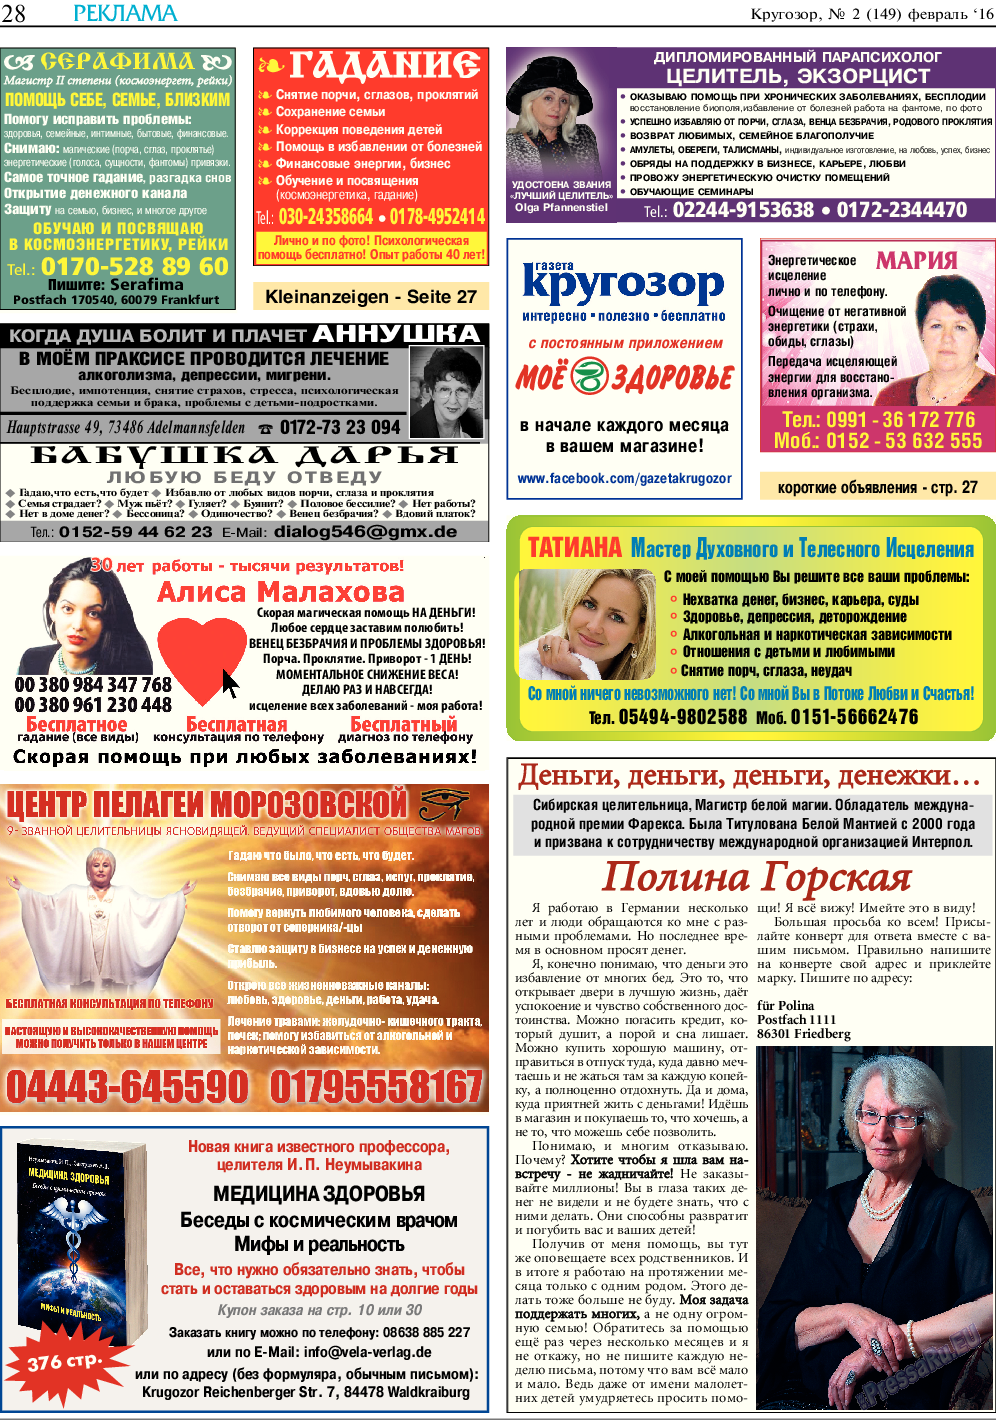 Кругозор, газета. 2016 №2 стр.28